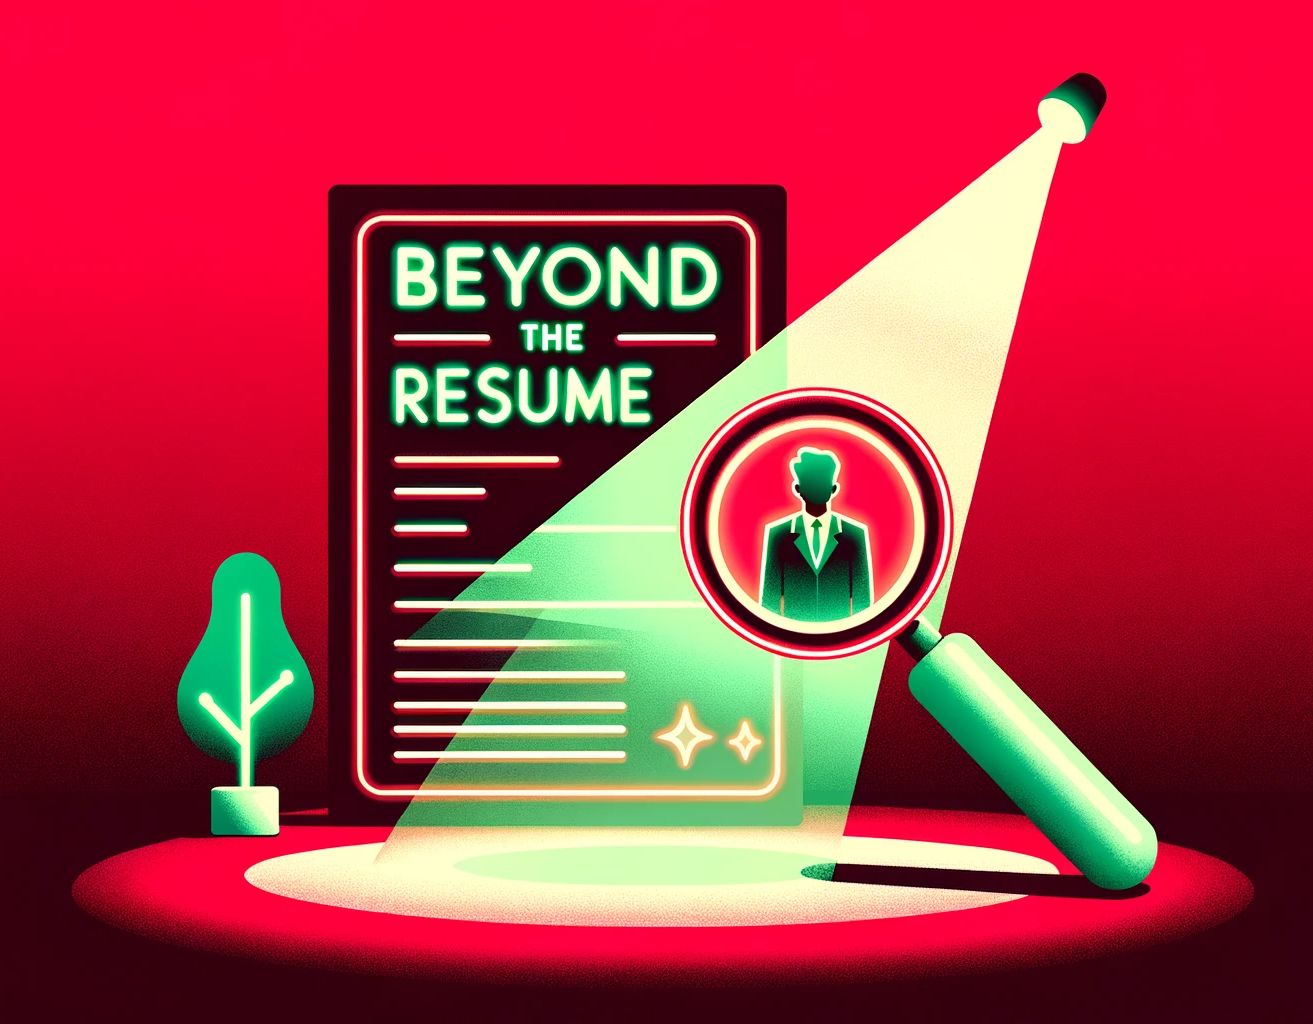 Look beyond the resume